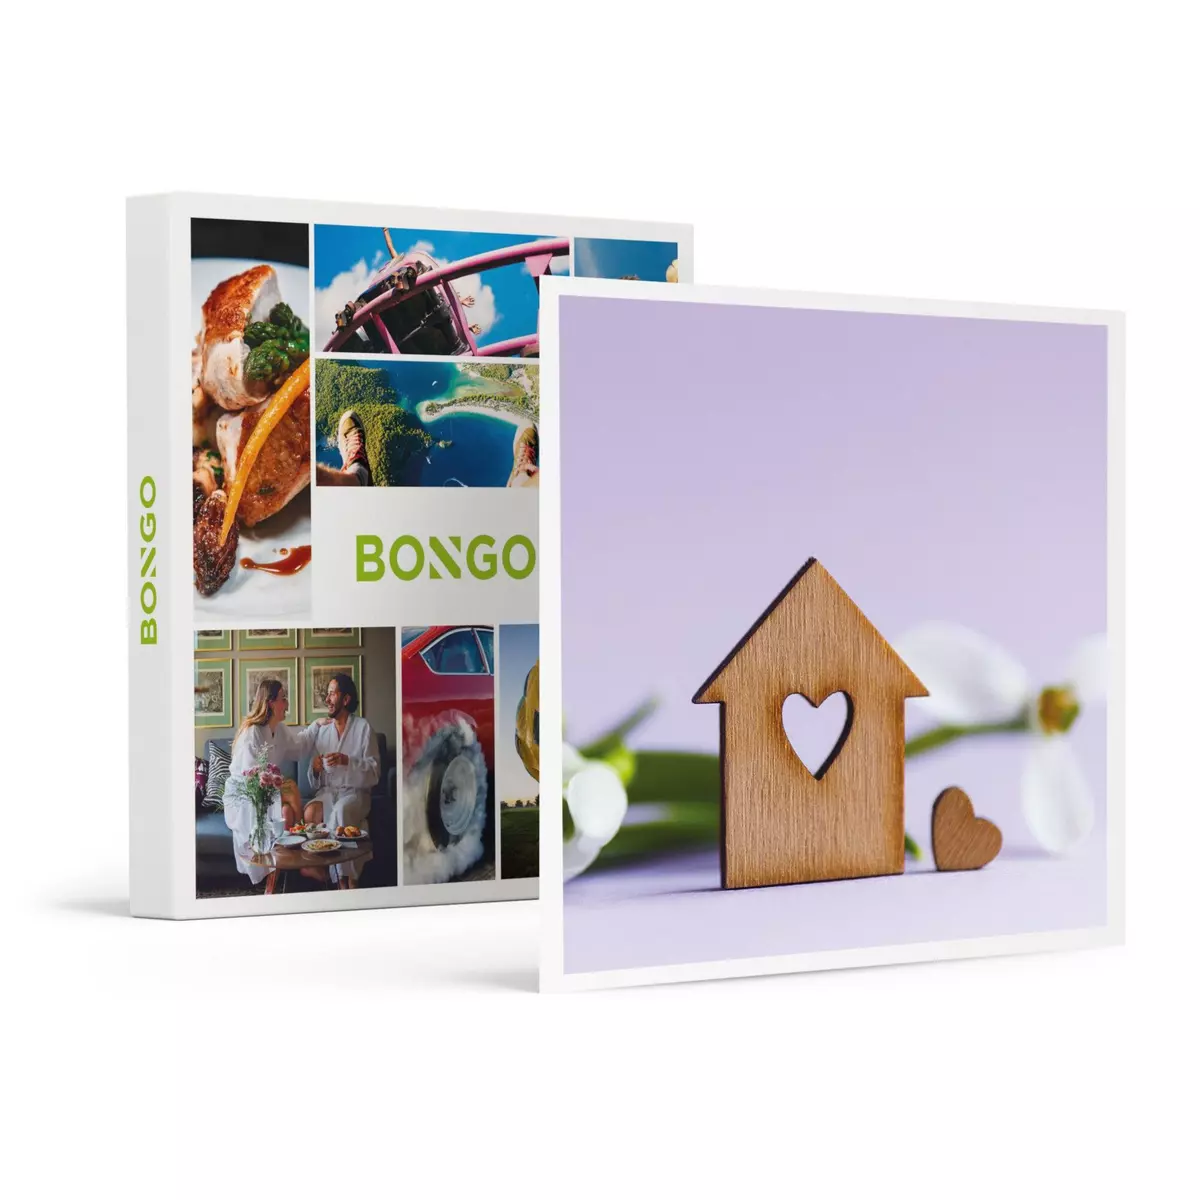 Smartbox Carte cadeau crémaillère- 40 € - Coffret Cadeau Multi-thèmes